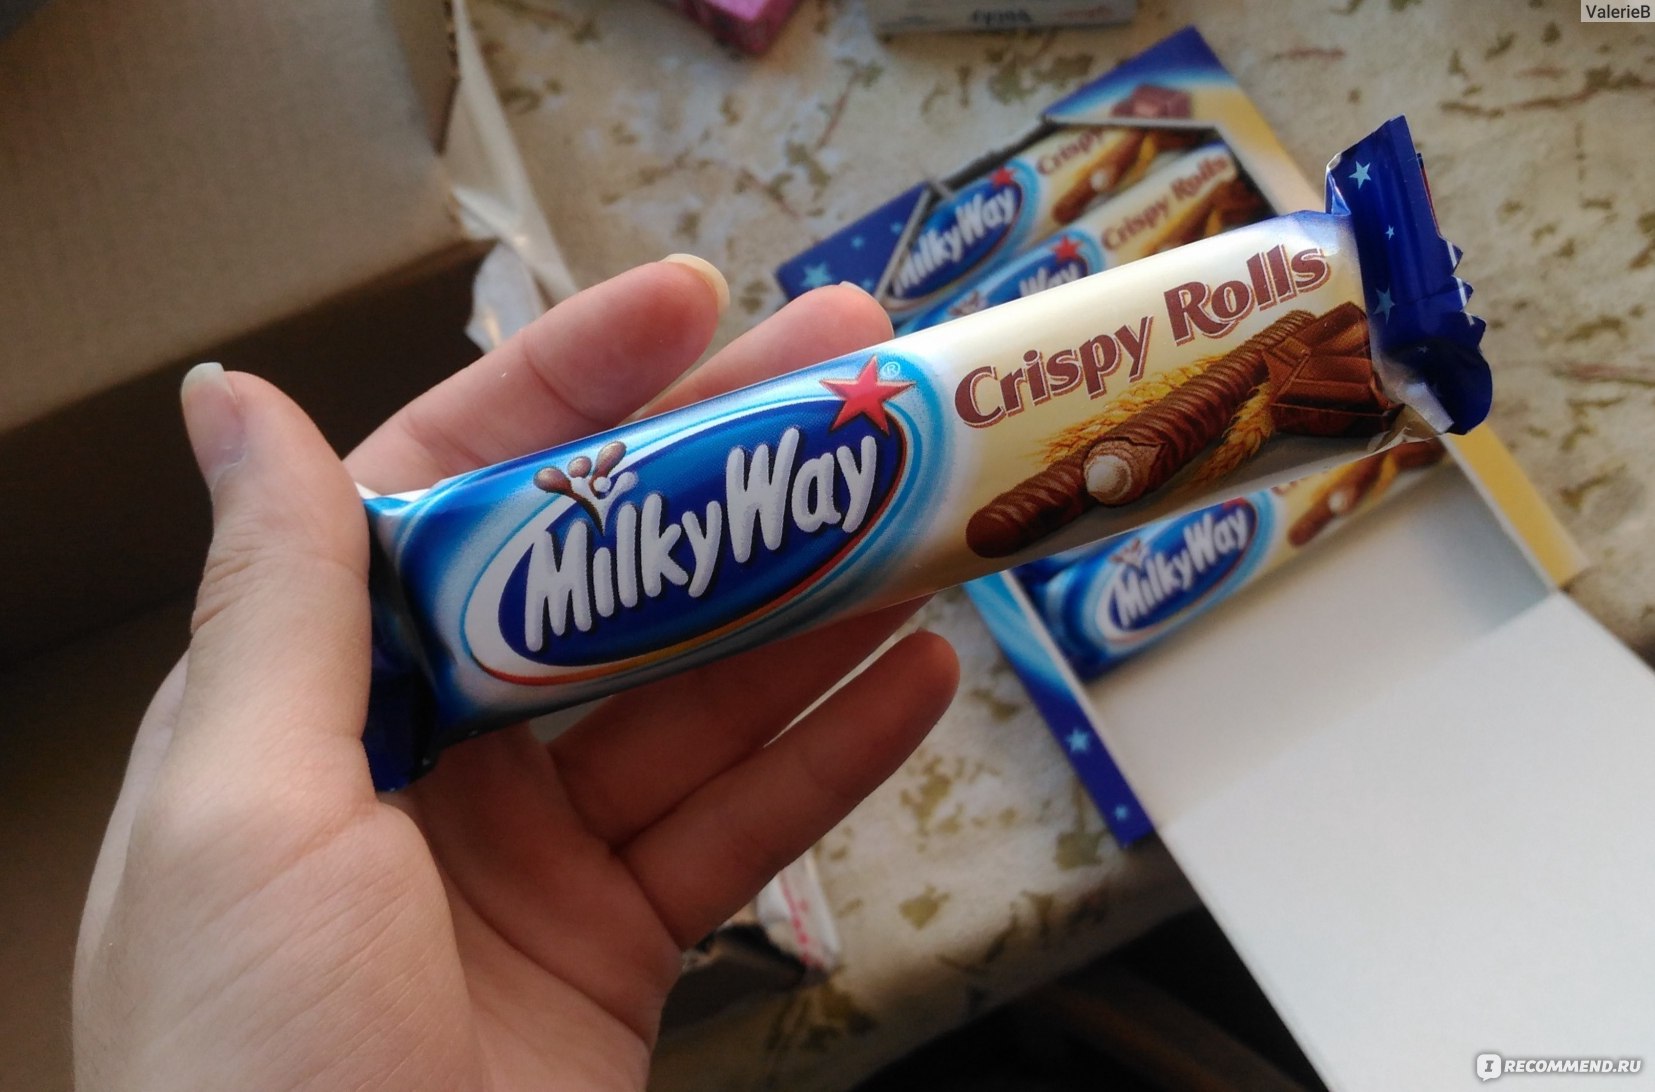 Категория: Разные продукты Бренд: Milky way Тип продукта: Вафли.